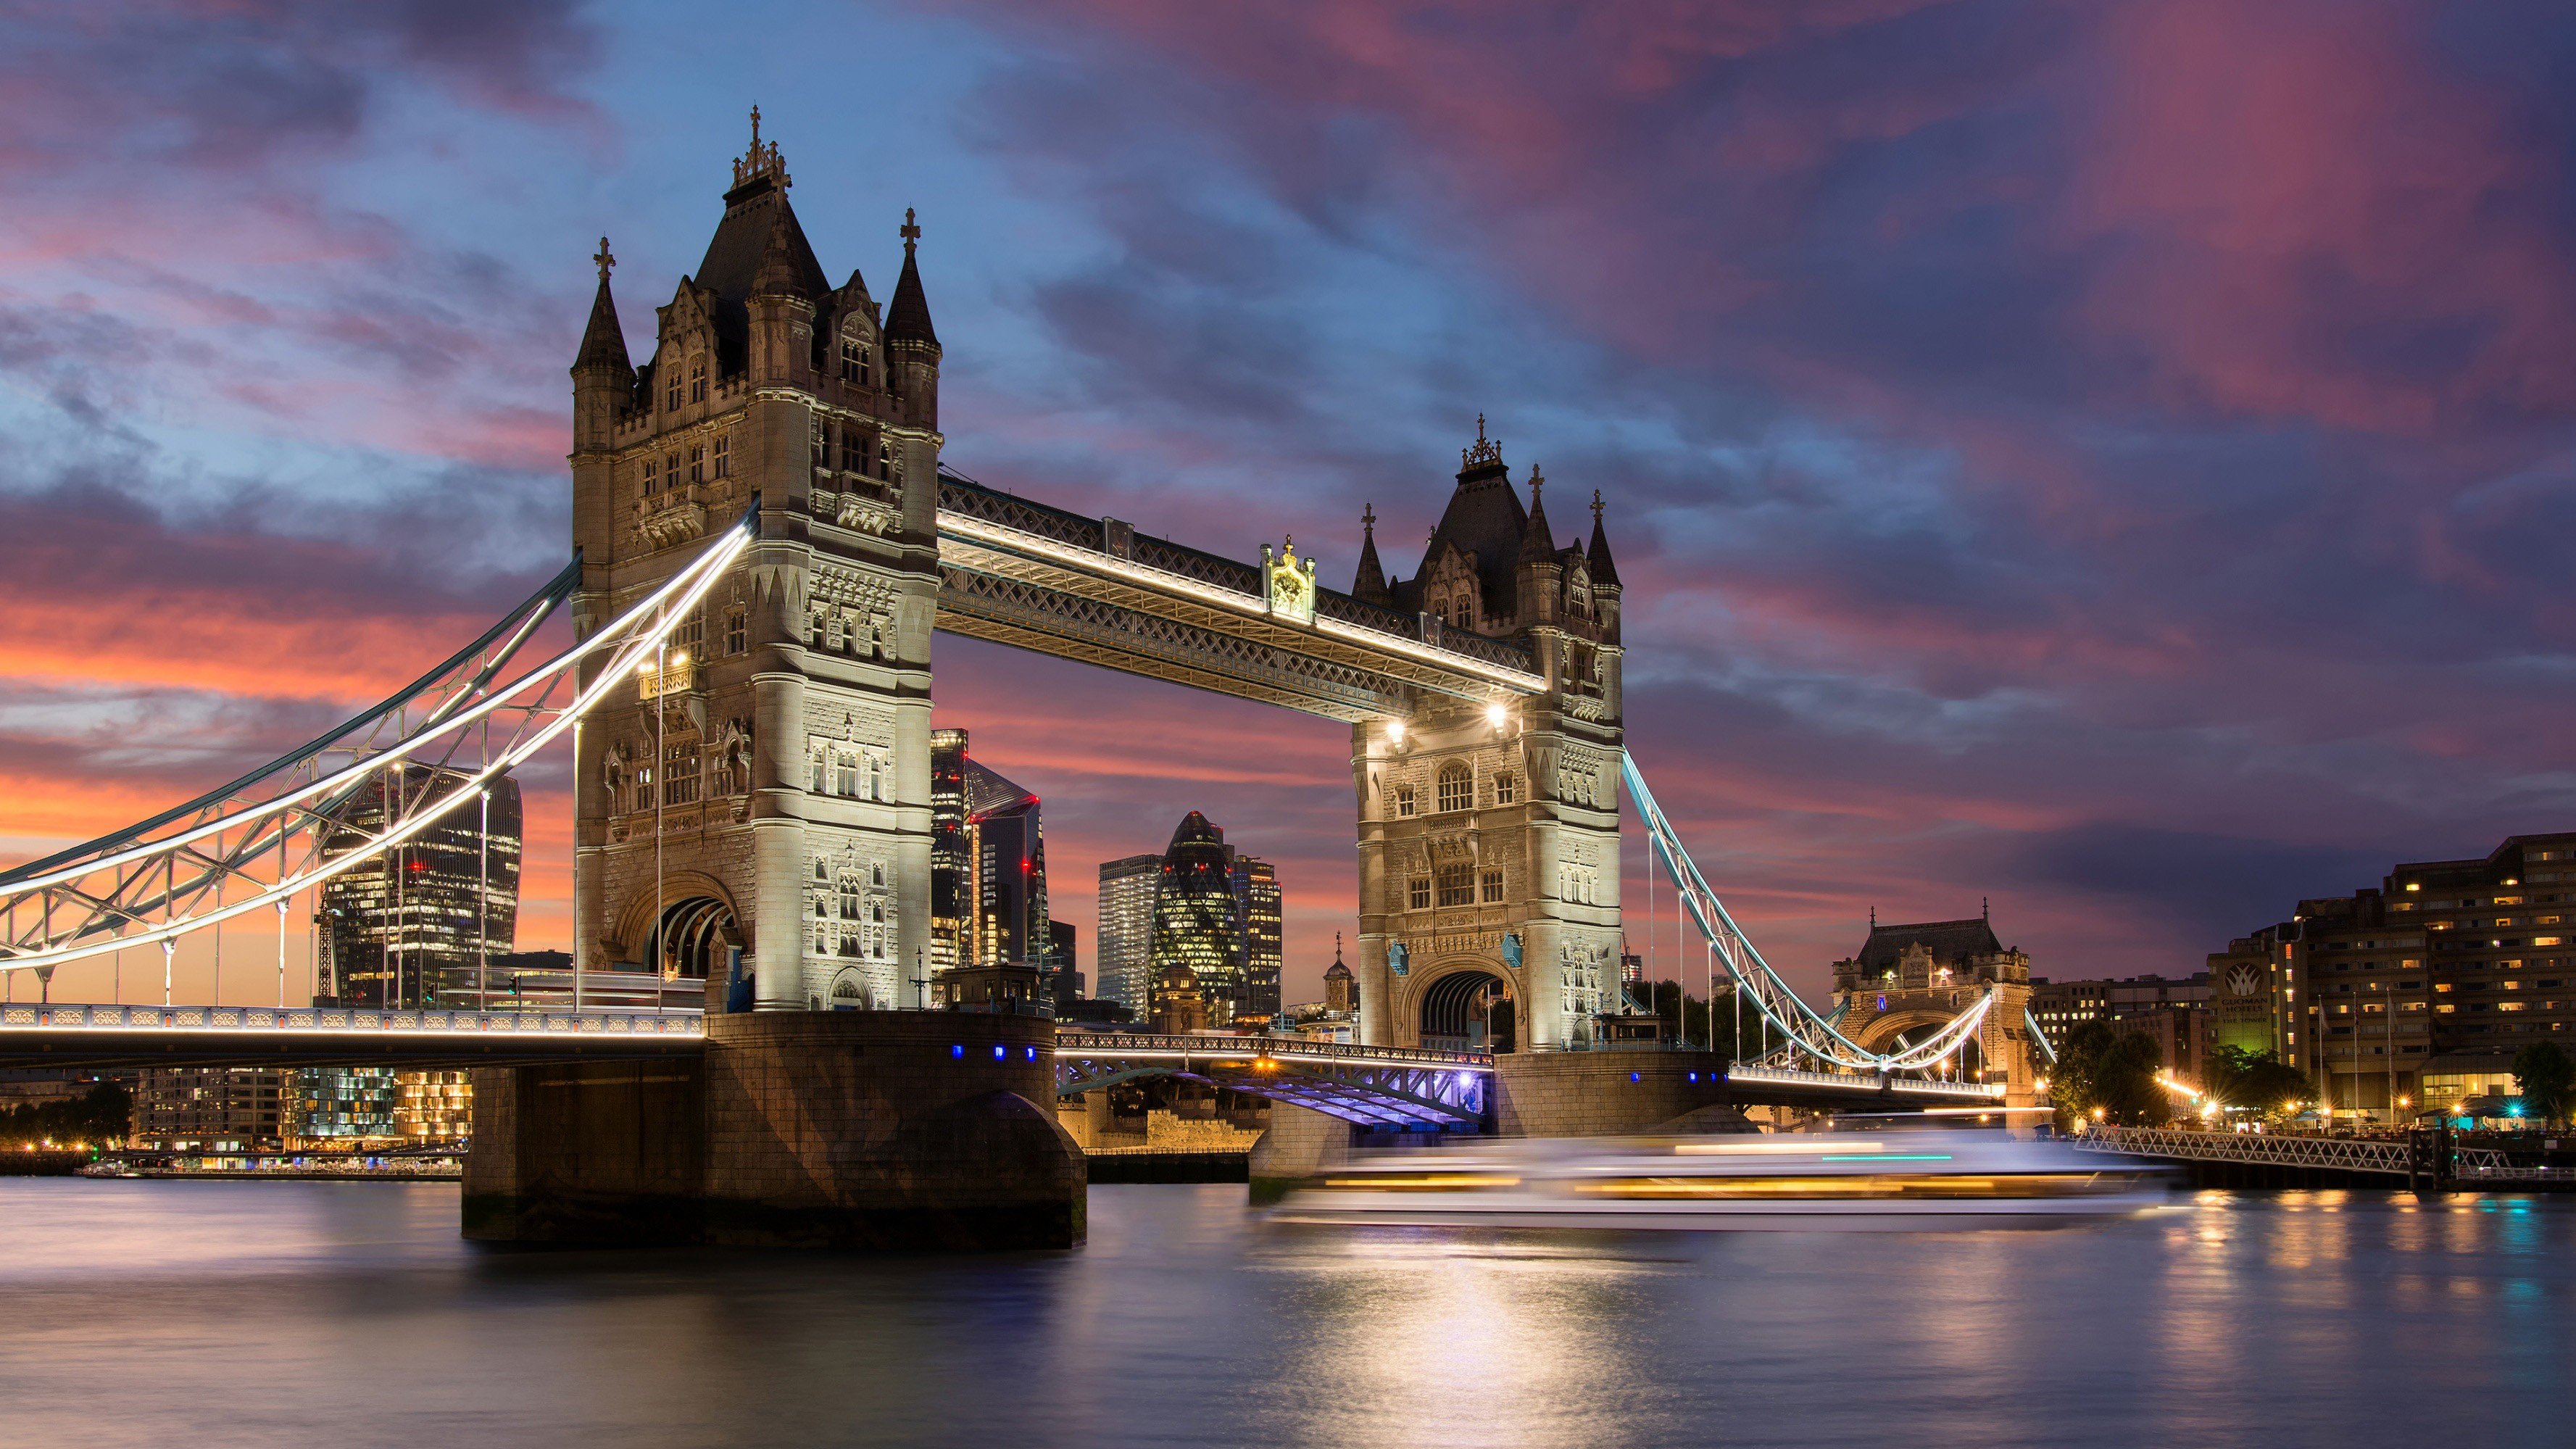 Fondos de pantalla Puente de la torre en Londres